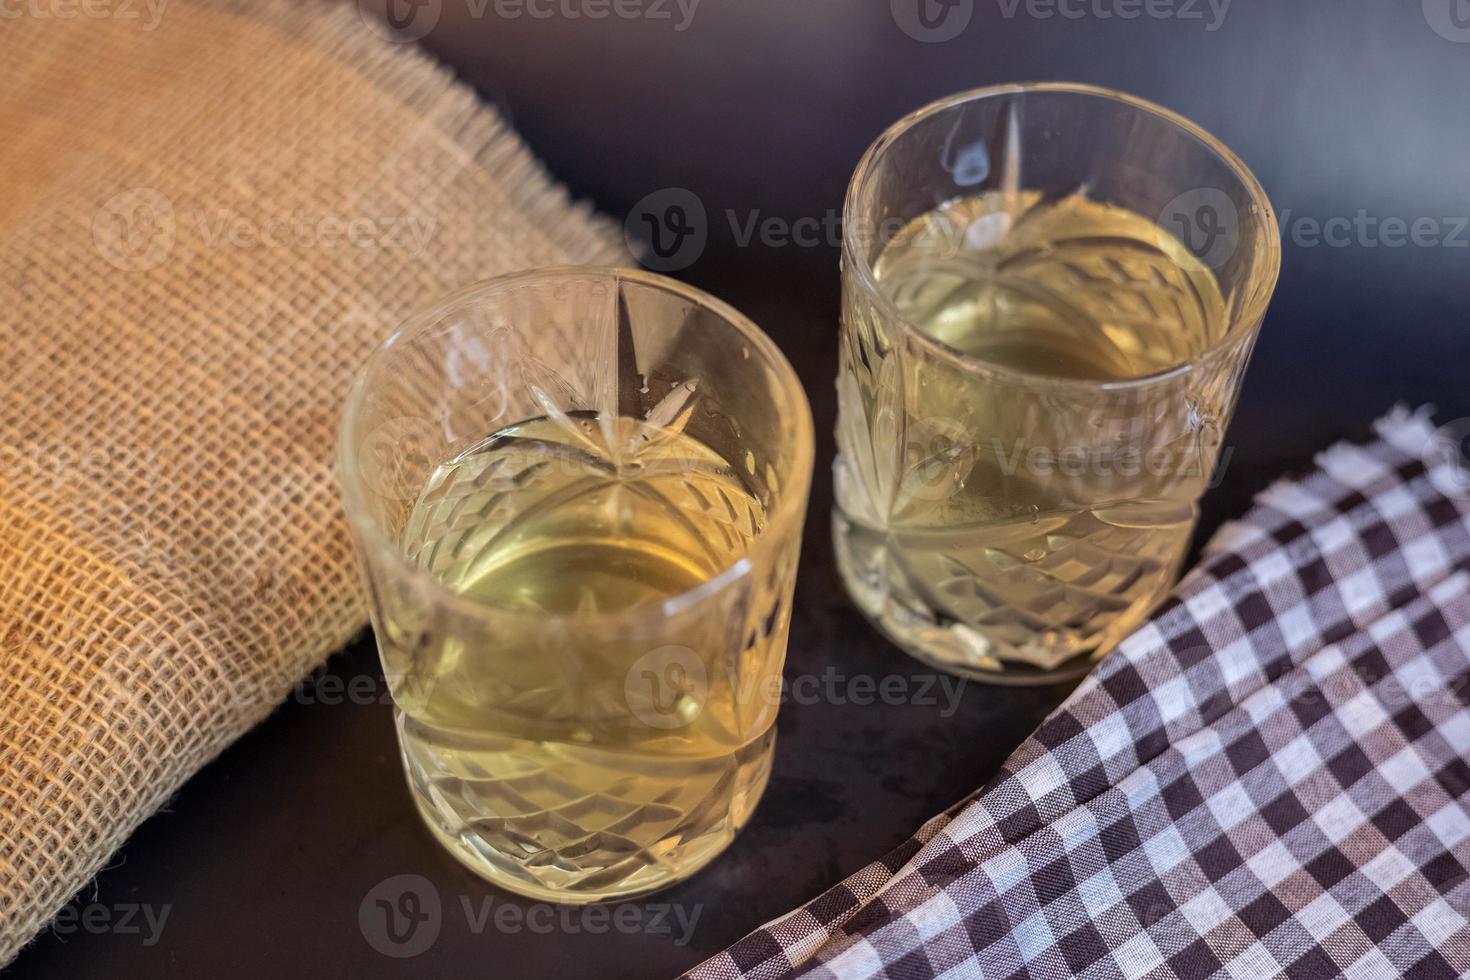 vaso de agua sobre la mesa foto